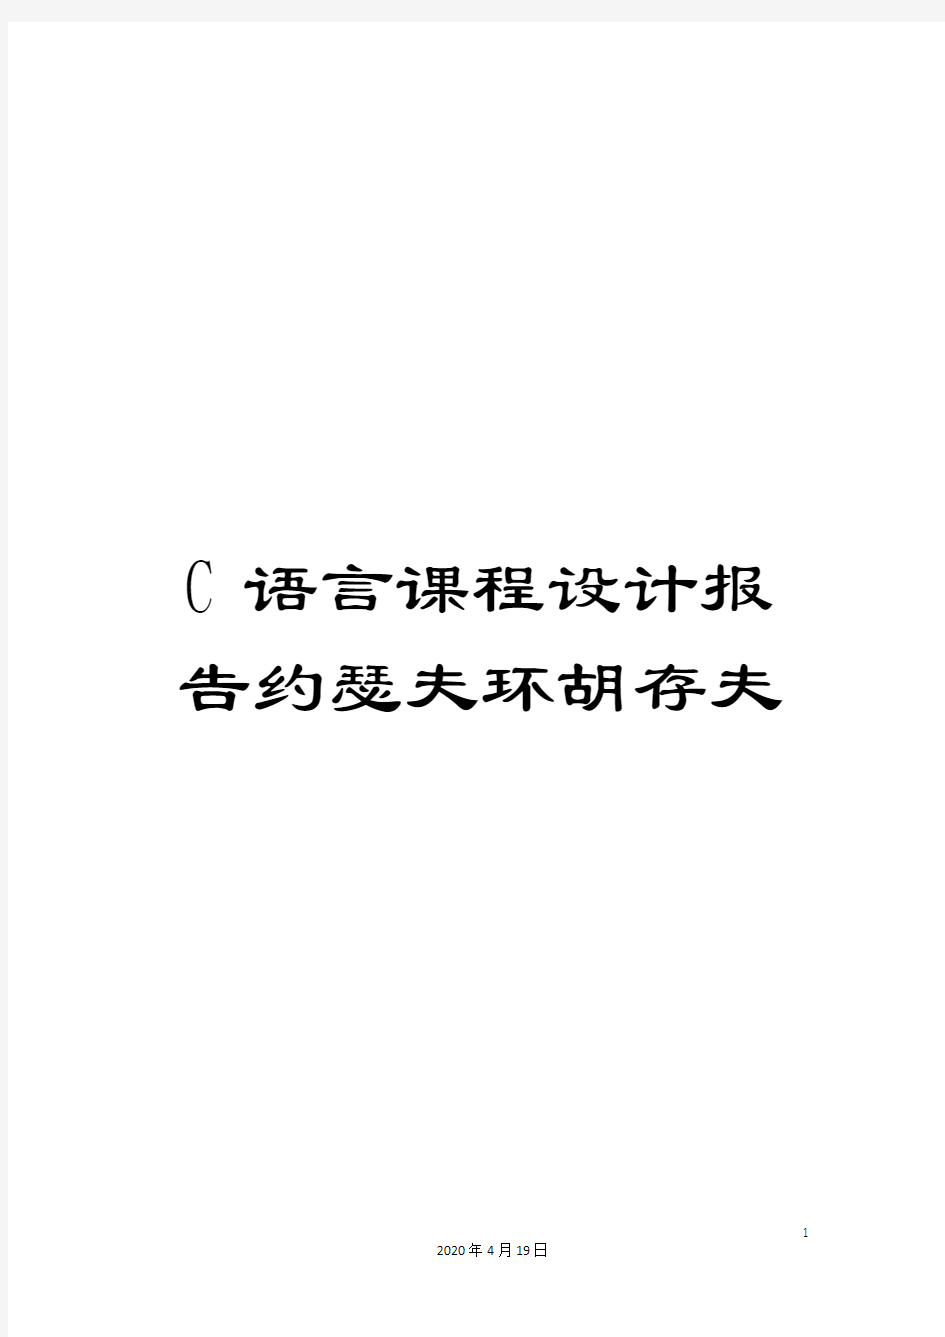 C语言课程设计报告约瑟夫环胡存夫